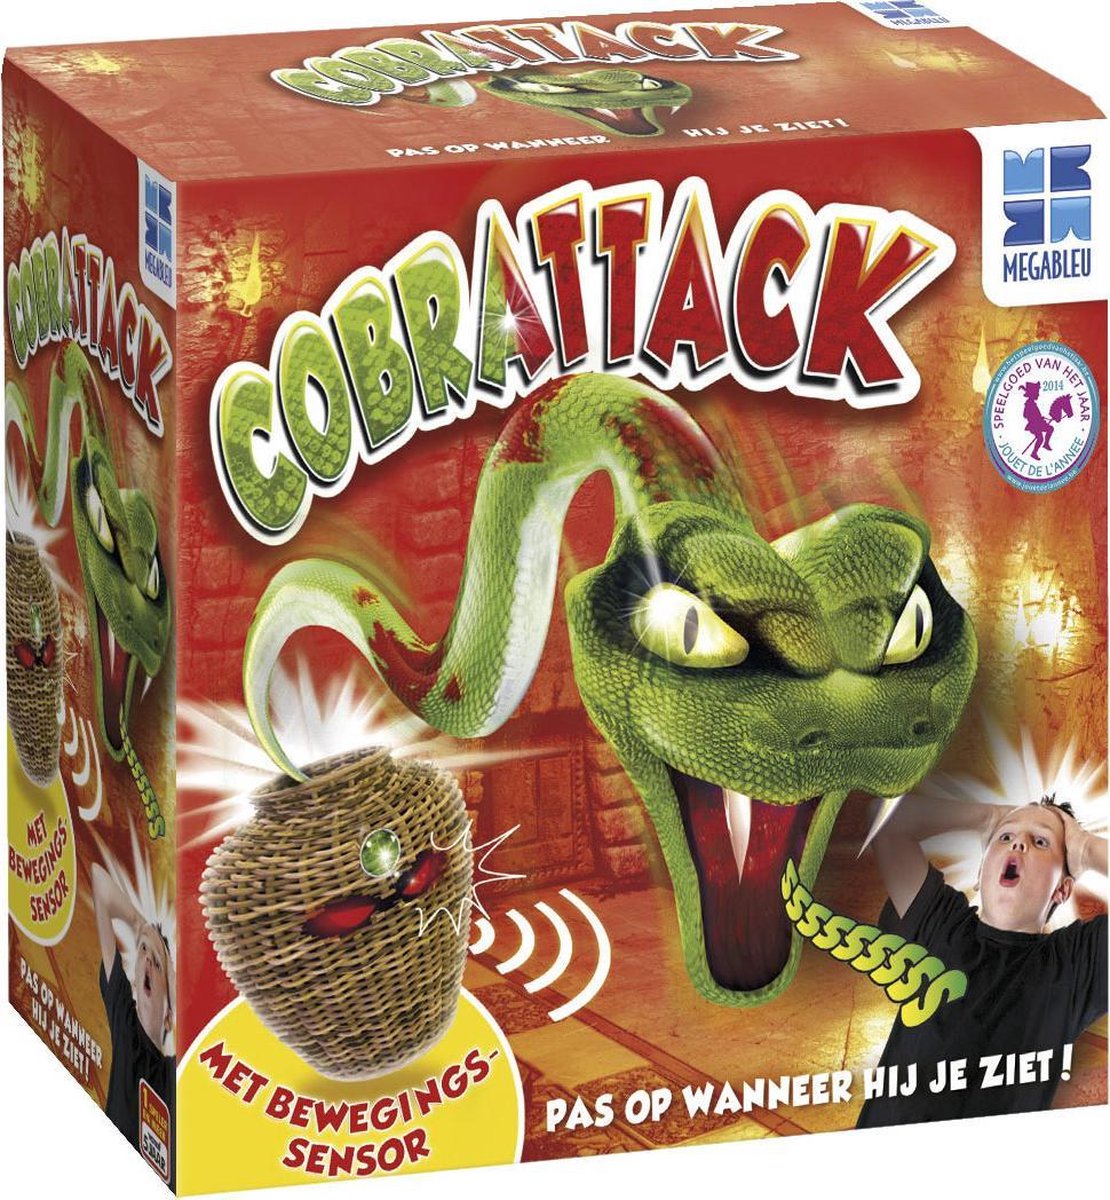 Cobrattack Spel | Games | bol.com